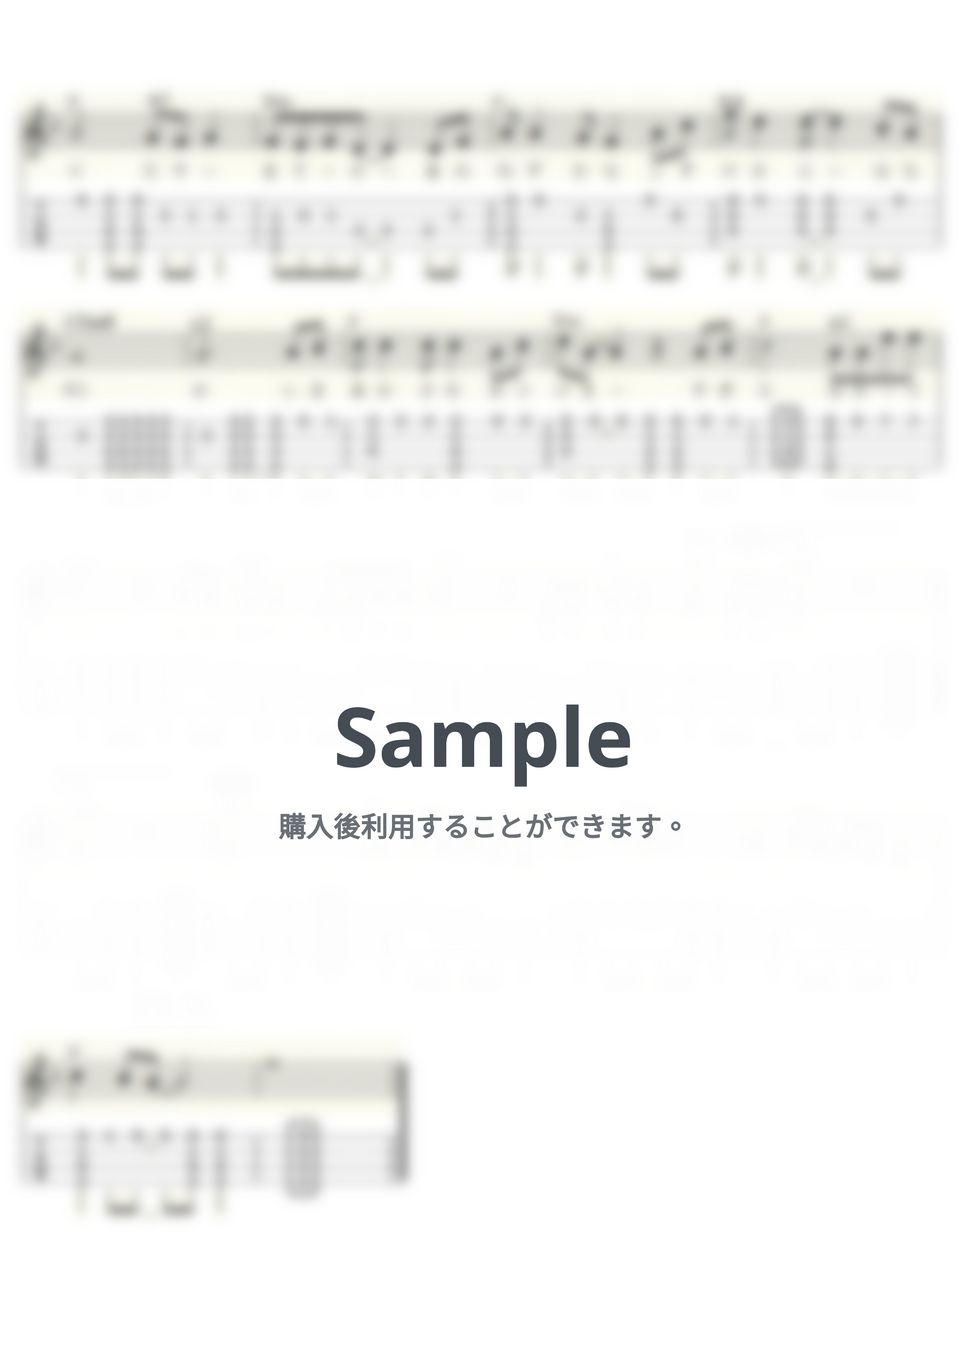 猫 - 地下鉄にのって (ｳｸﾚﾚｿﾛ/Low-G/中級) by ukulelepapa